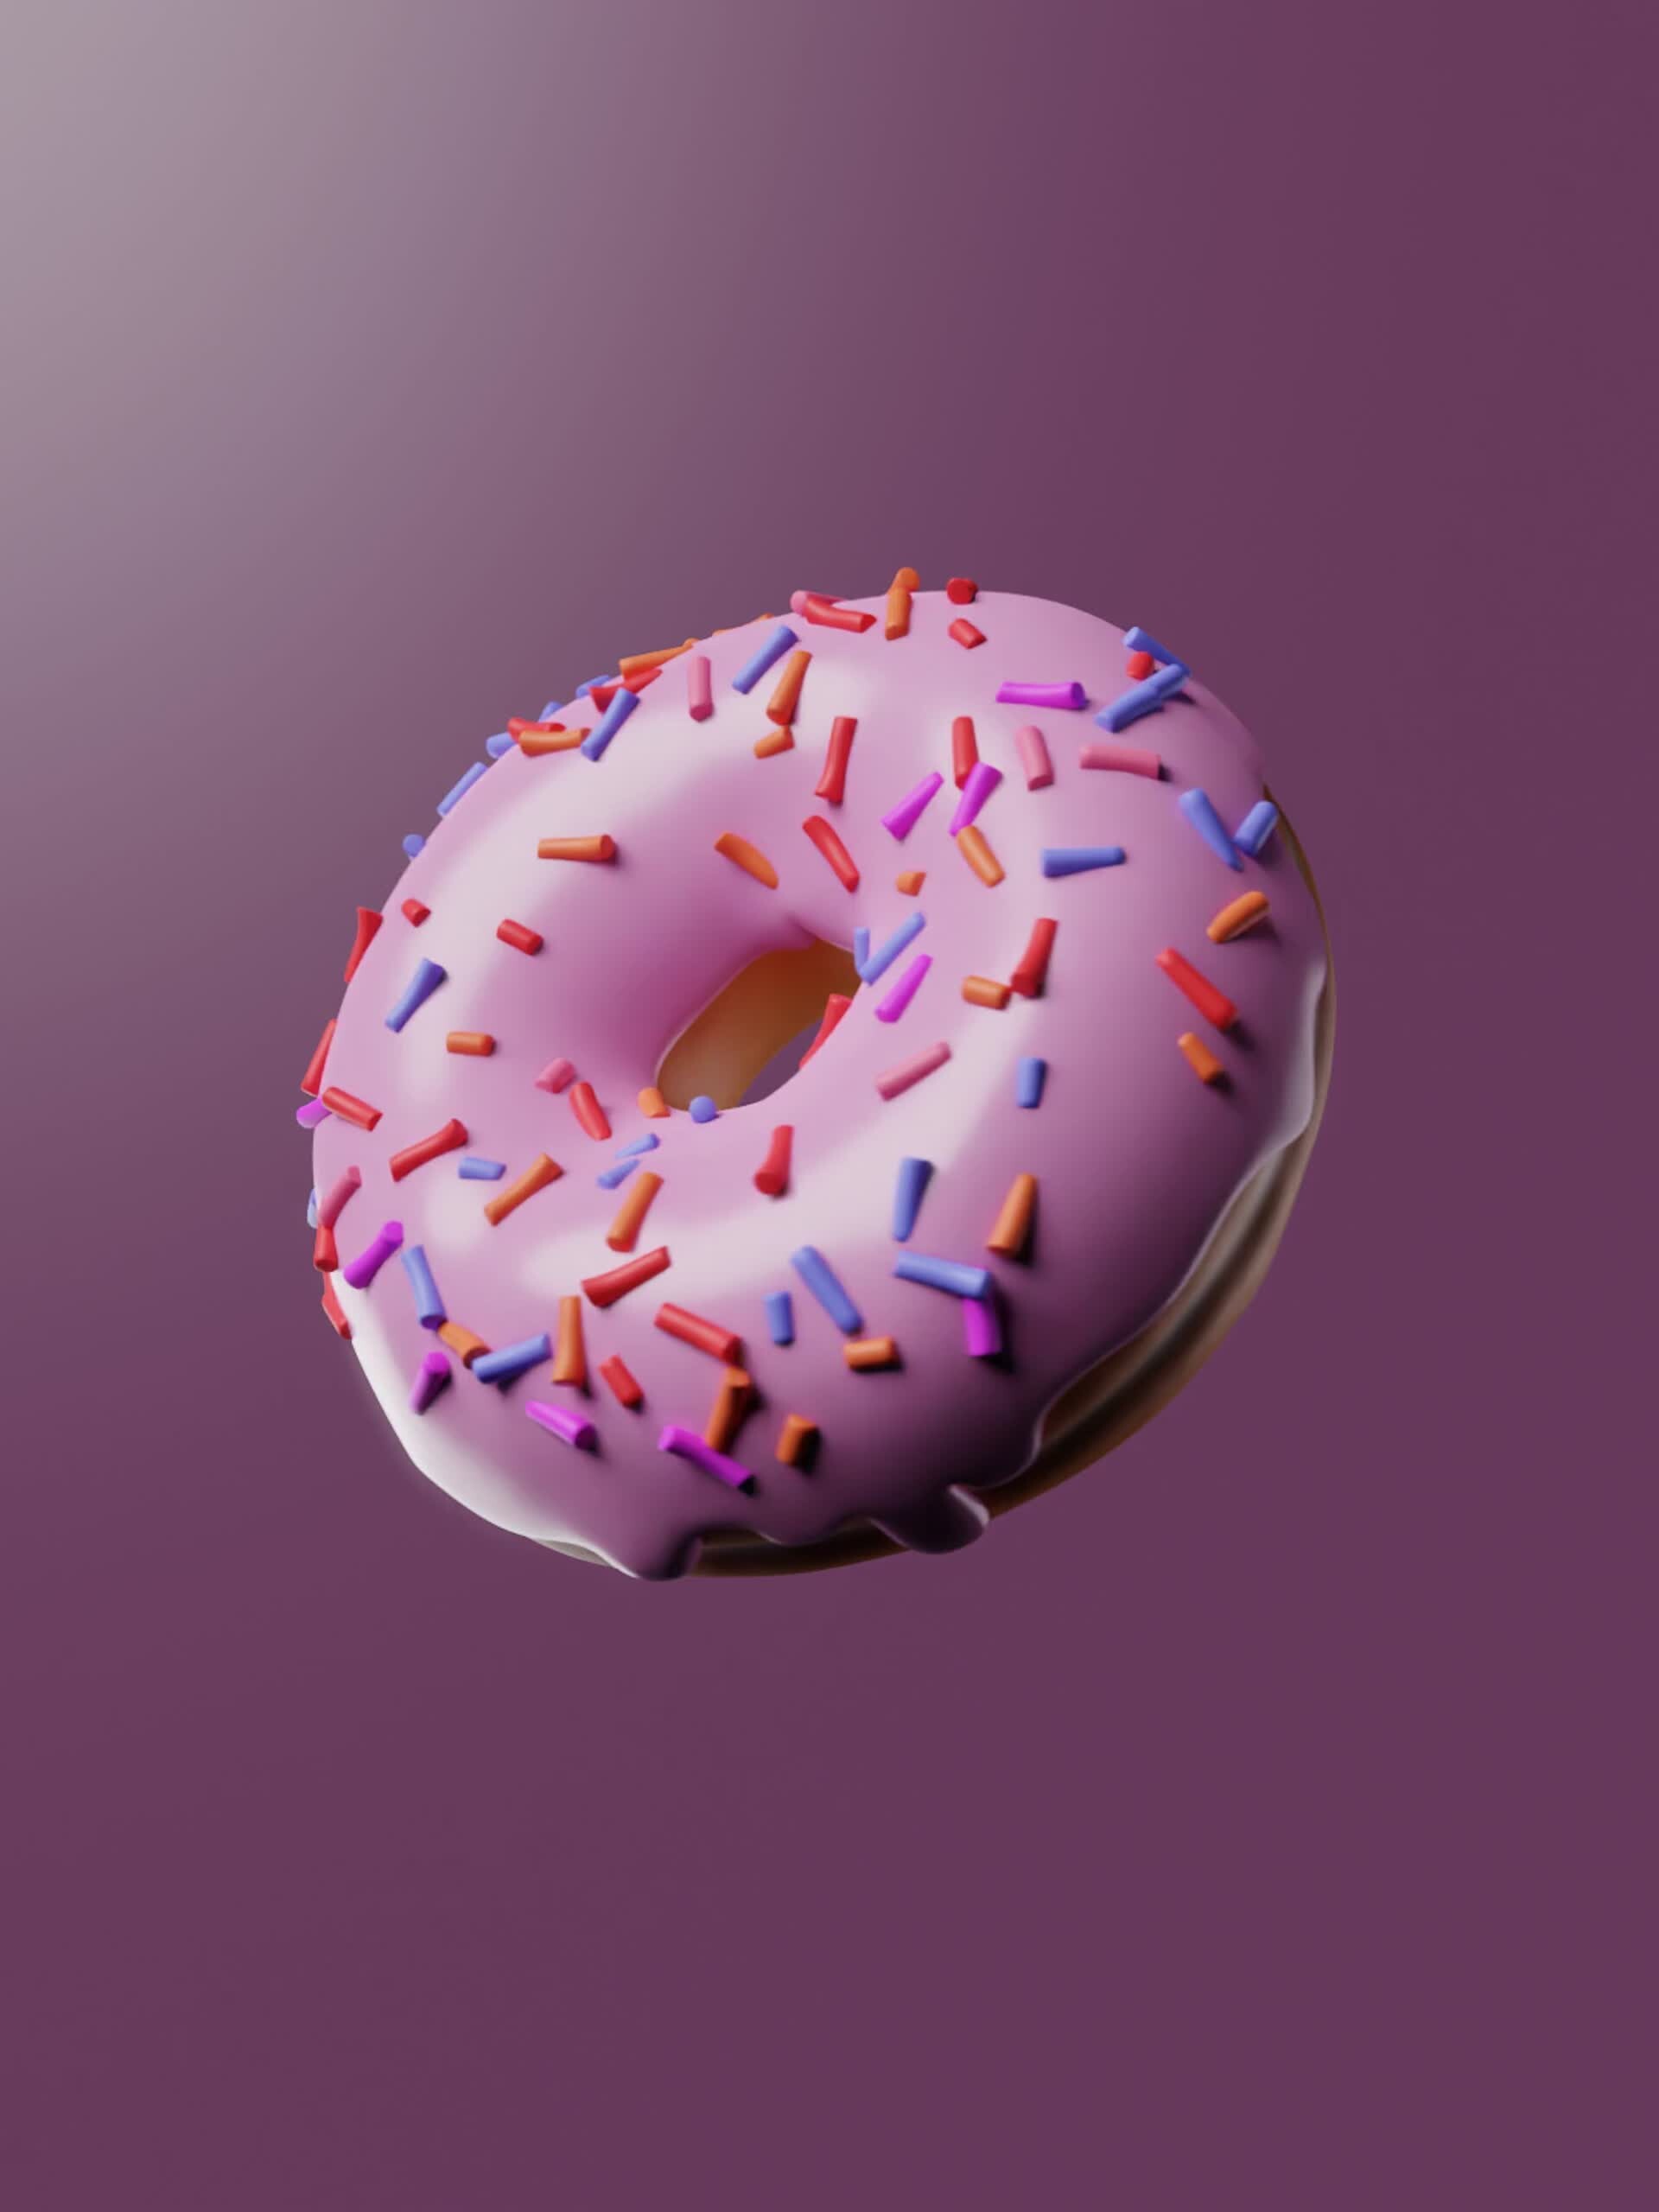 donut blender modeling tutorial